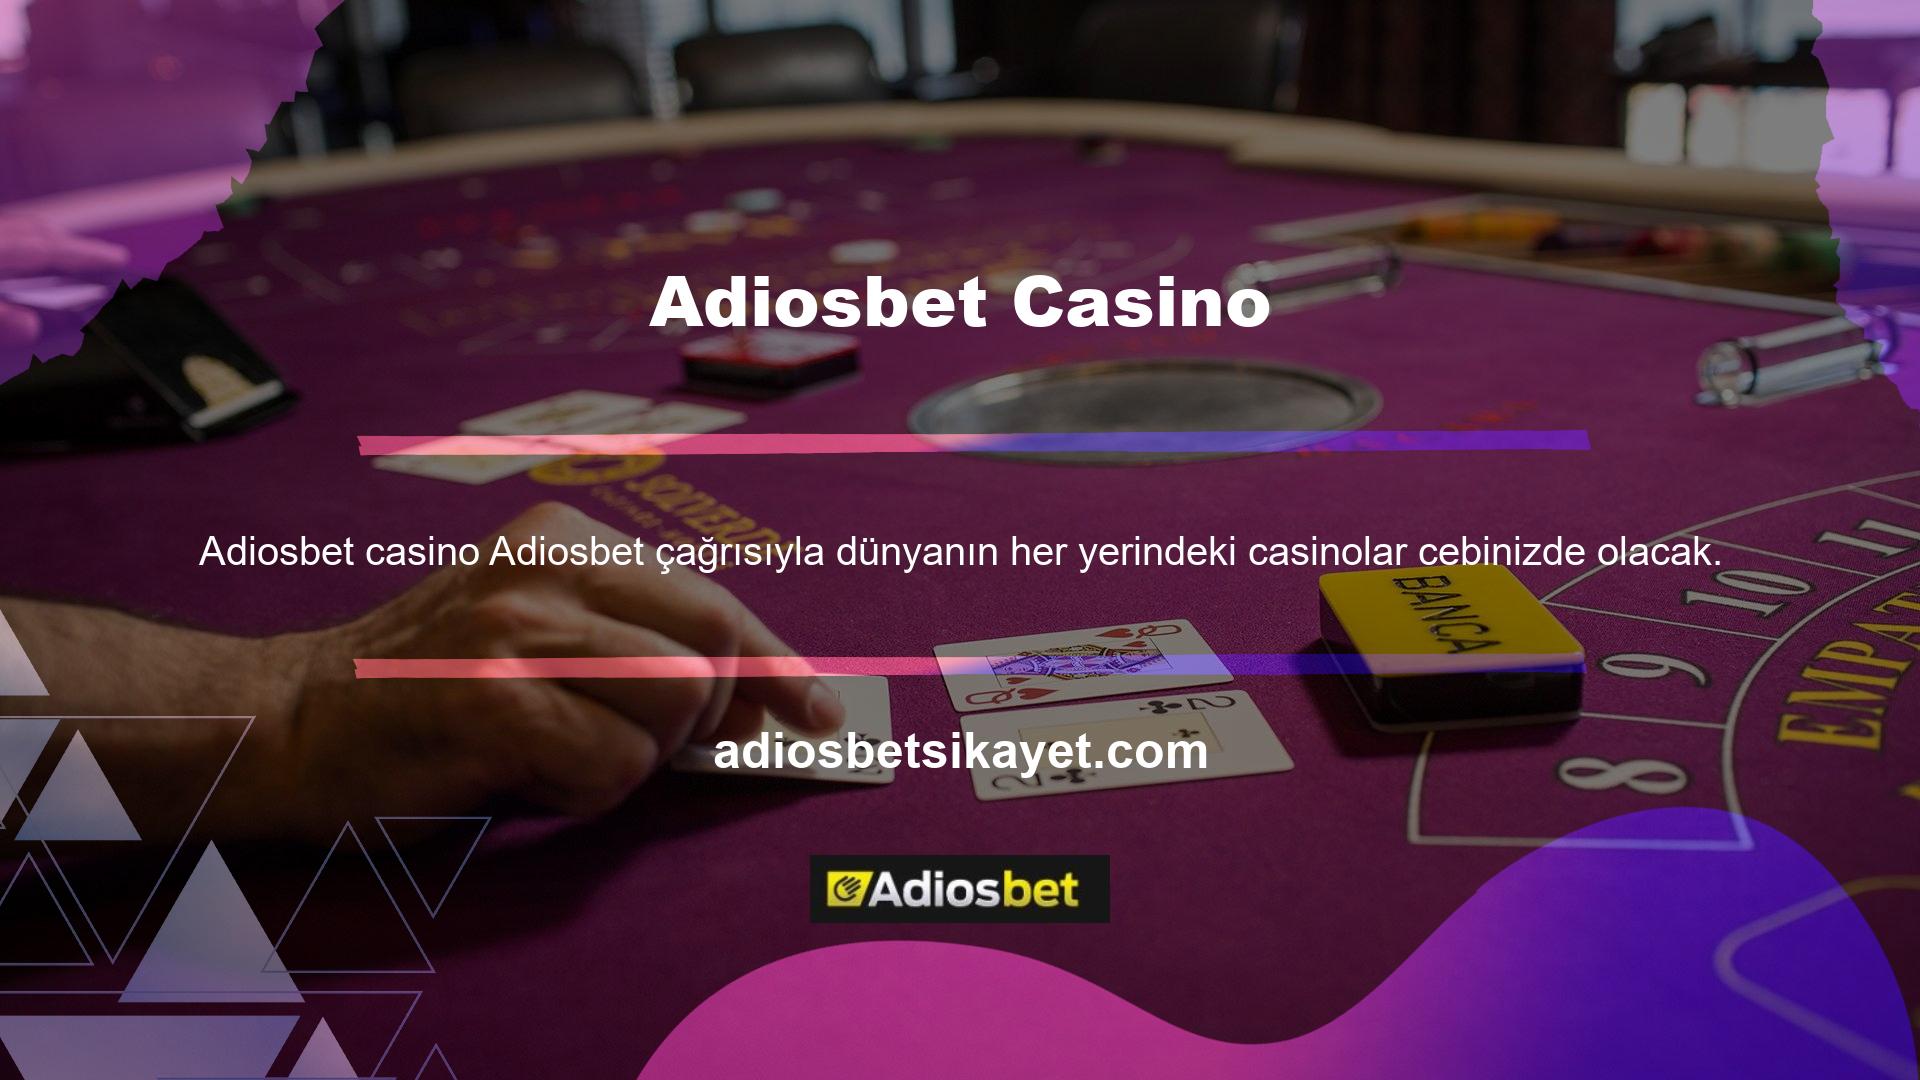 Siteye giriş yaptıktan sonra “Canlı Casino” seçeneğine tıklayarak rulet odasını görüntüleyebilirsiniz